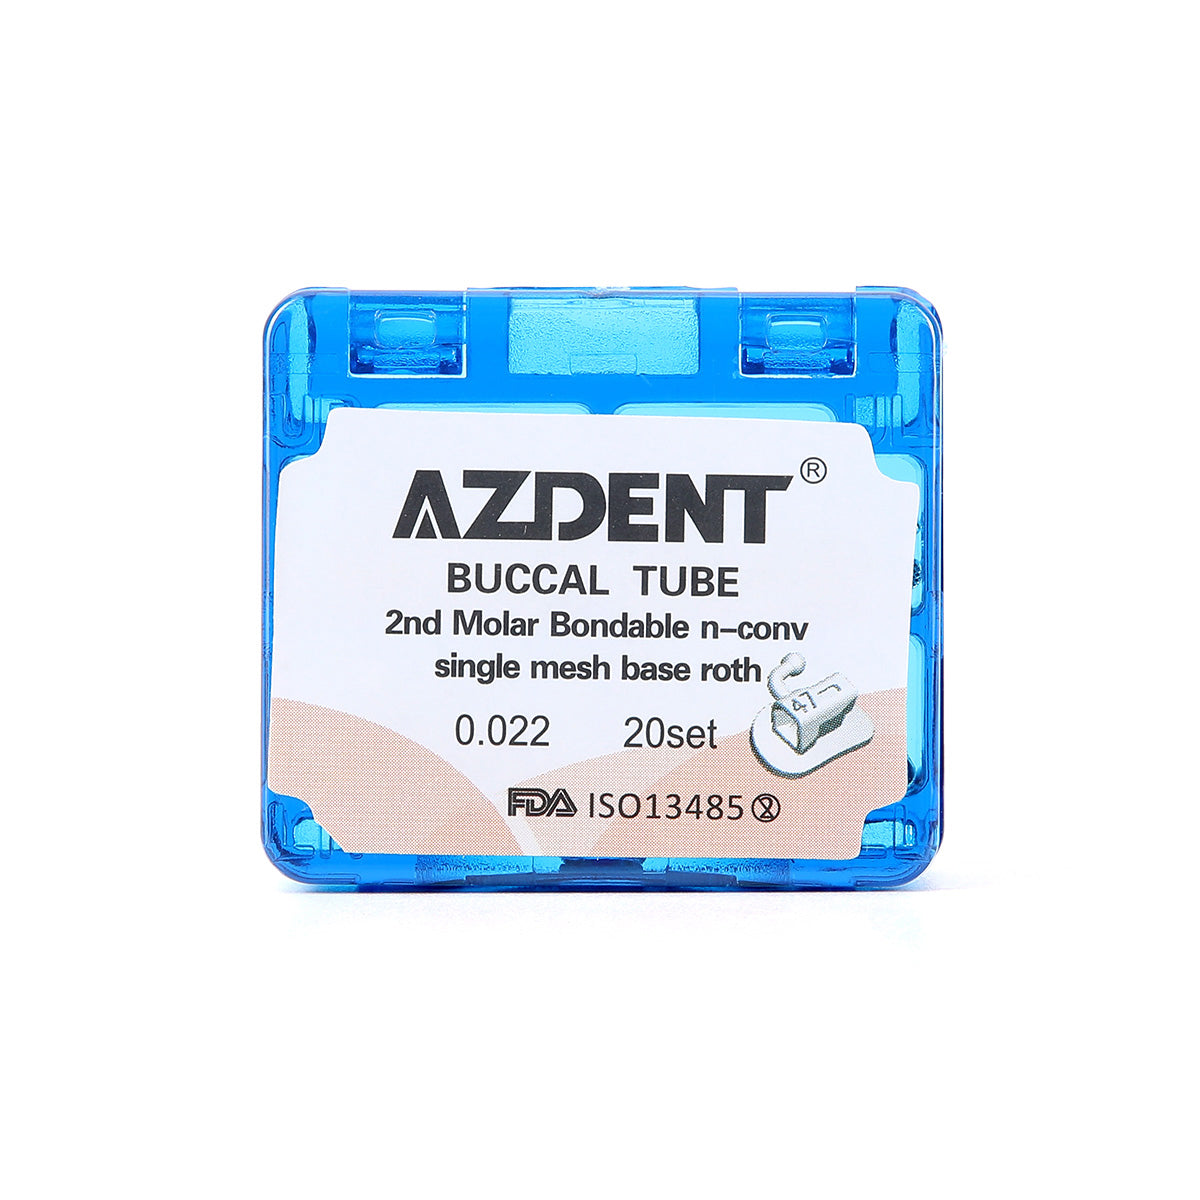 AZDENT Buccal Tube 2nd Molar Bondable Split Non-Convertible Roth 0.022 20Sets/Box - azdentall.com